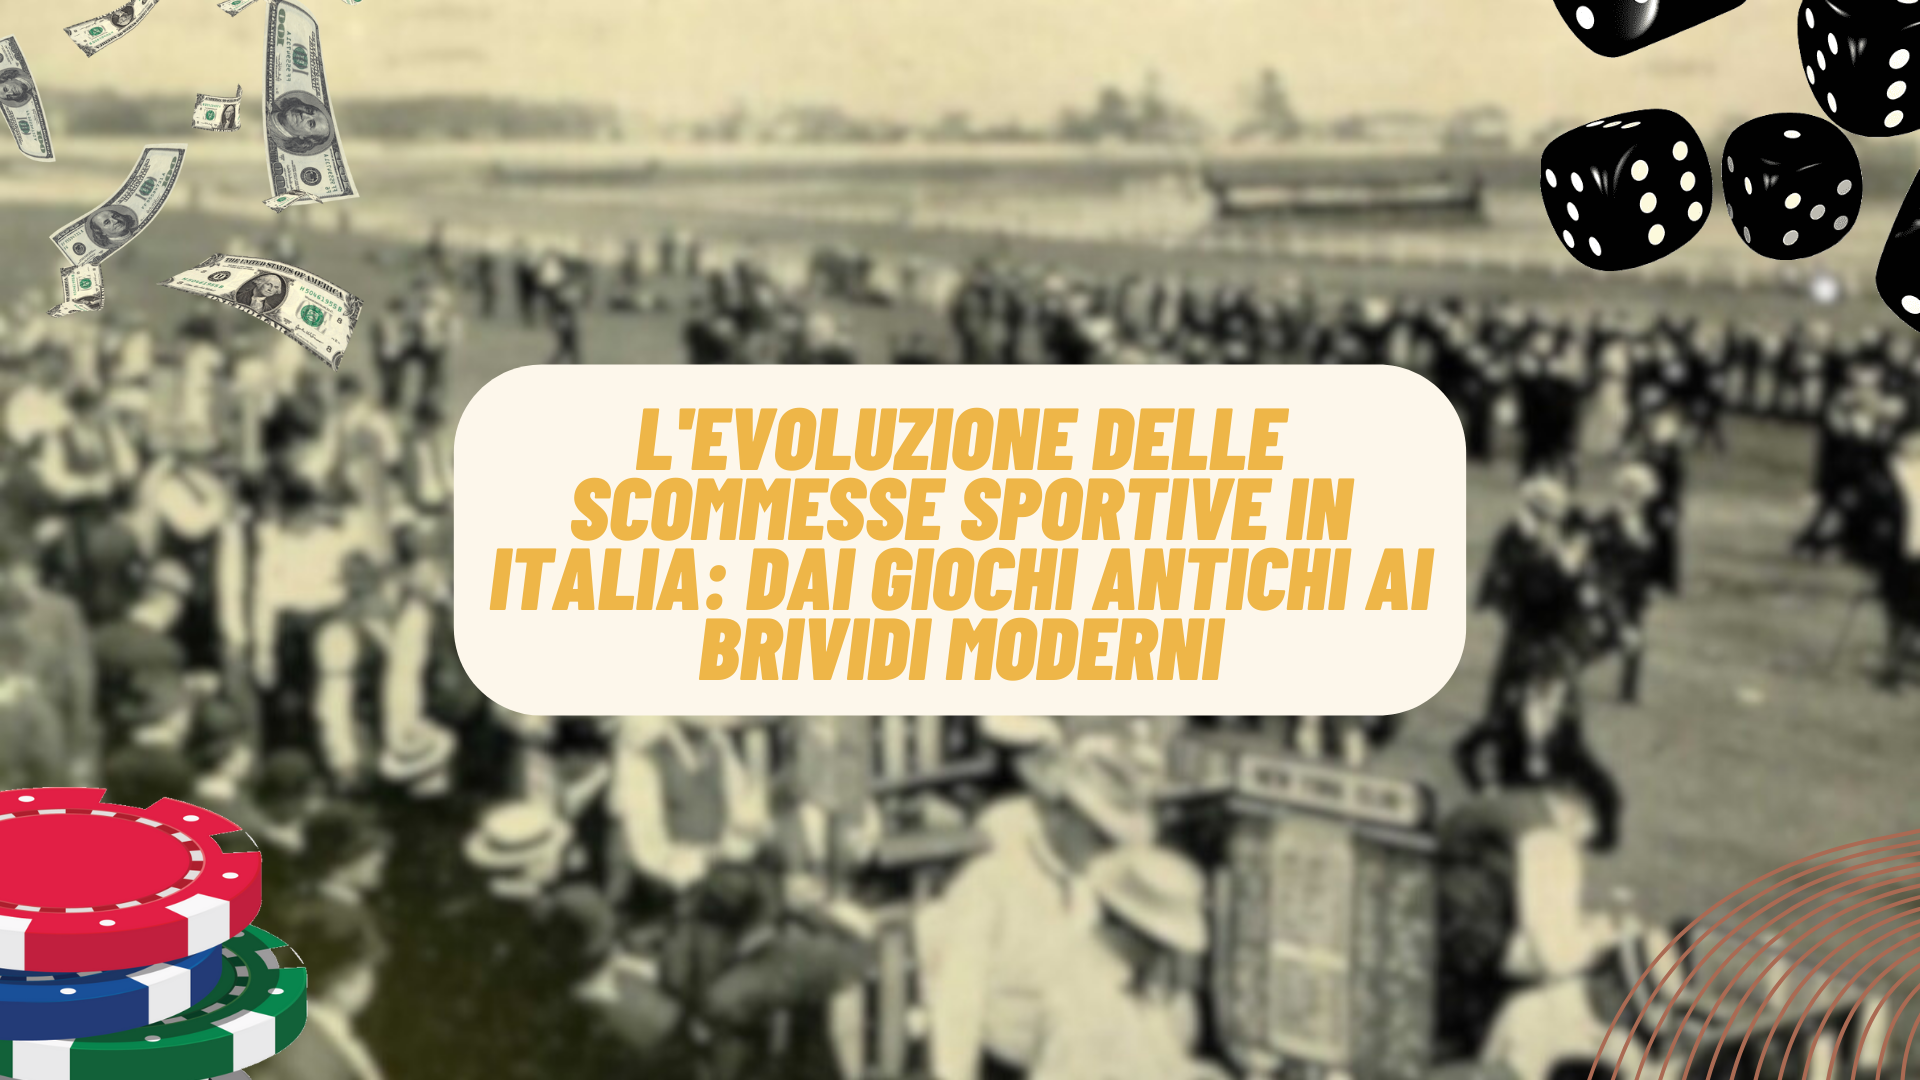 L'evoluzione delle scommesse sportive in Italia: Dai giochi antichi ai brividi moderni